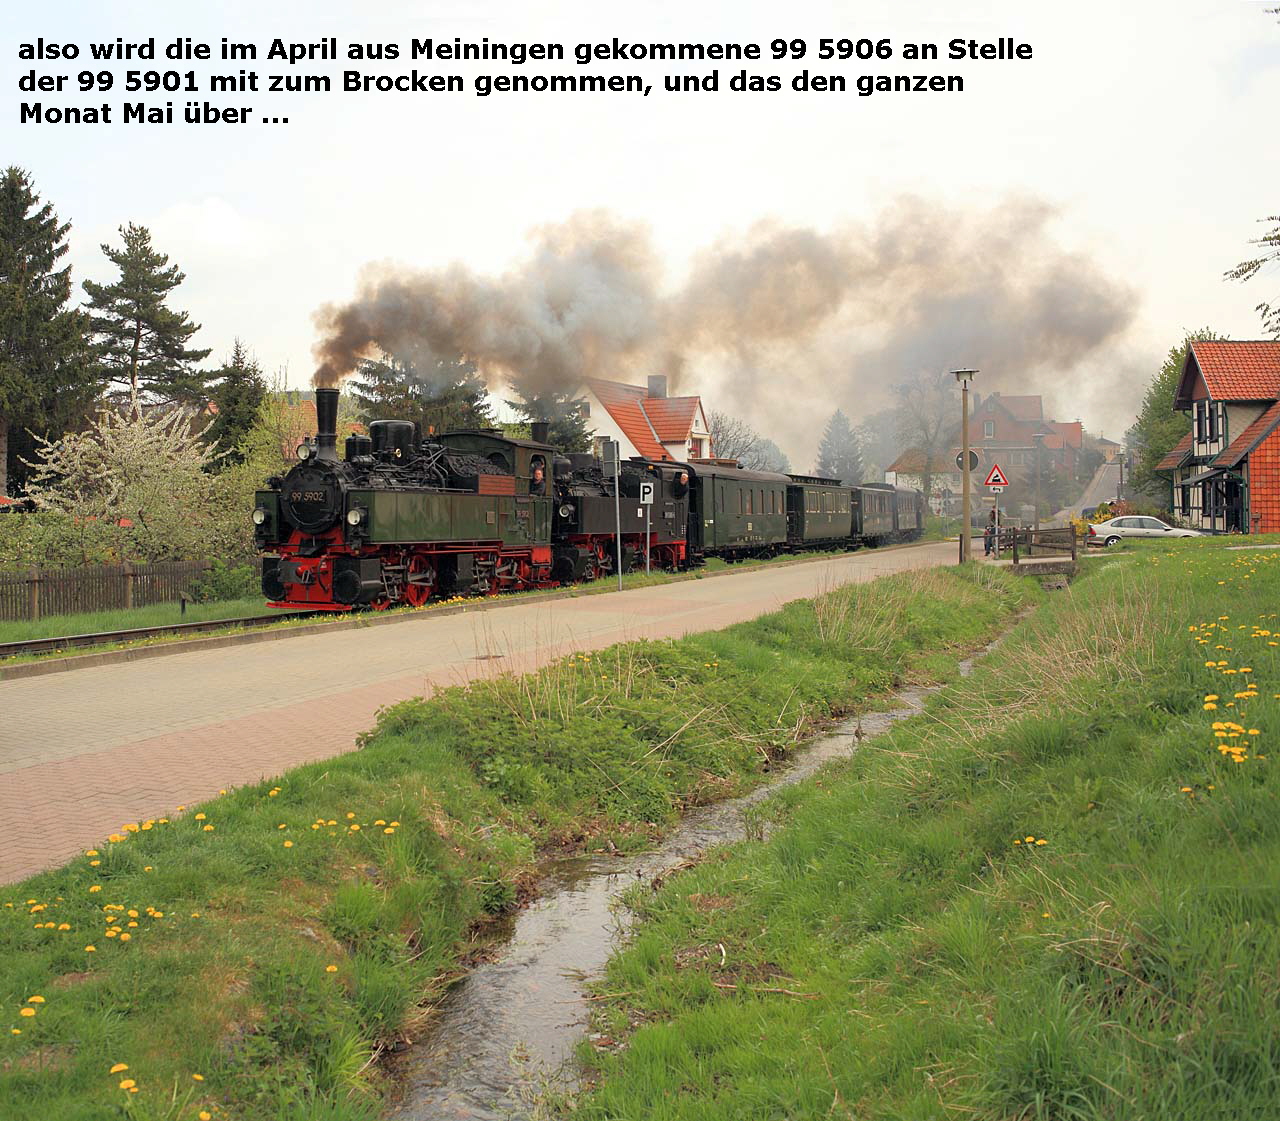 also wird die im April aus Meiningen gekommene 99 5906 an Stelle
  der 99 5901 mit zum Brocken genommen, und das den ganzen 
  Monat Mai ber ...